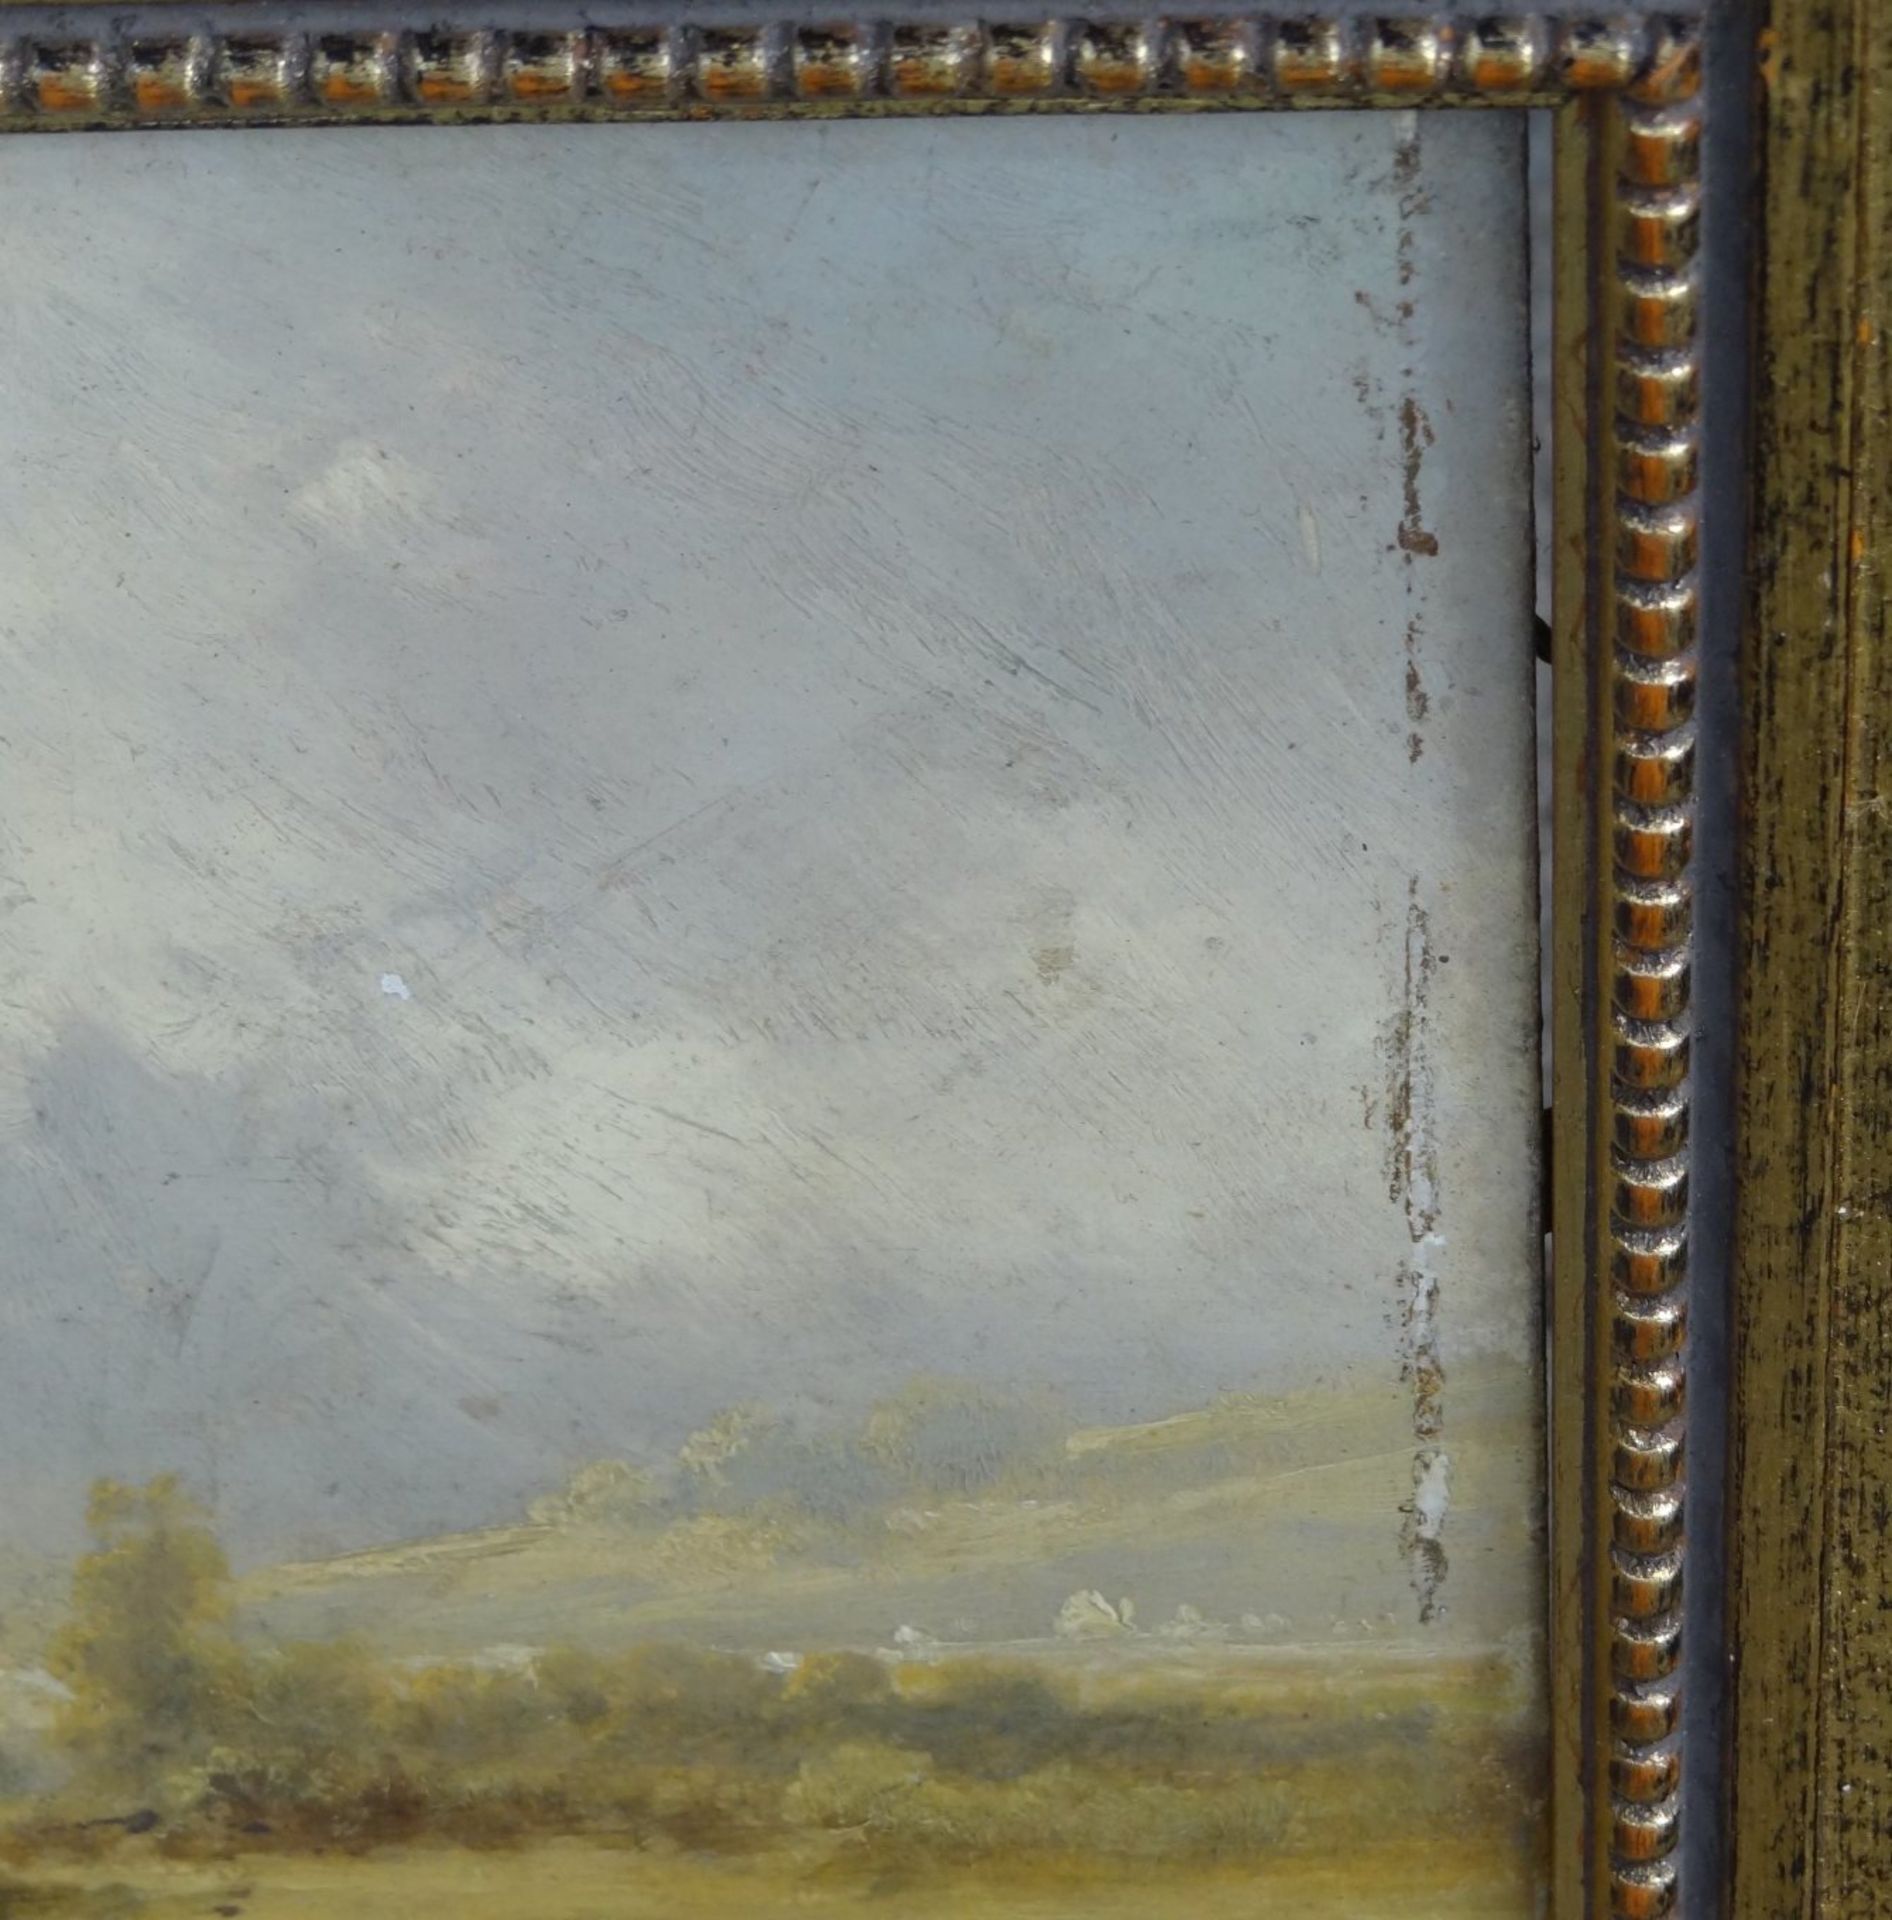 unleserl. signierte Landschaft, Öl/Holz, gerahmt, RG 32x45 cm, seitlich von Rahmen beriebe - Bild 5 aus 7